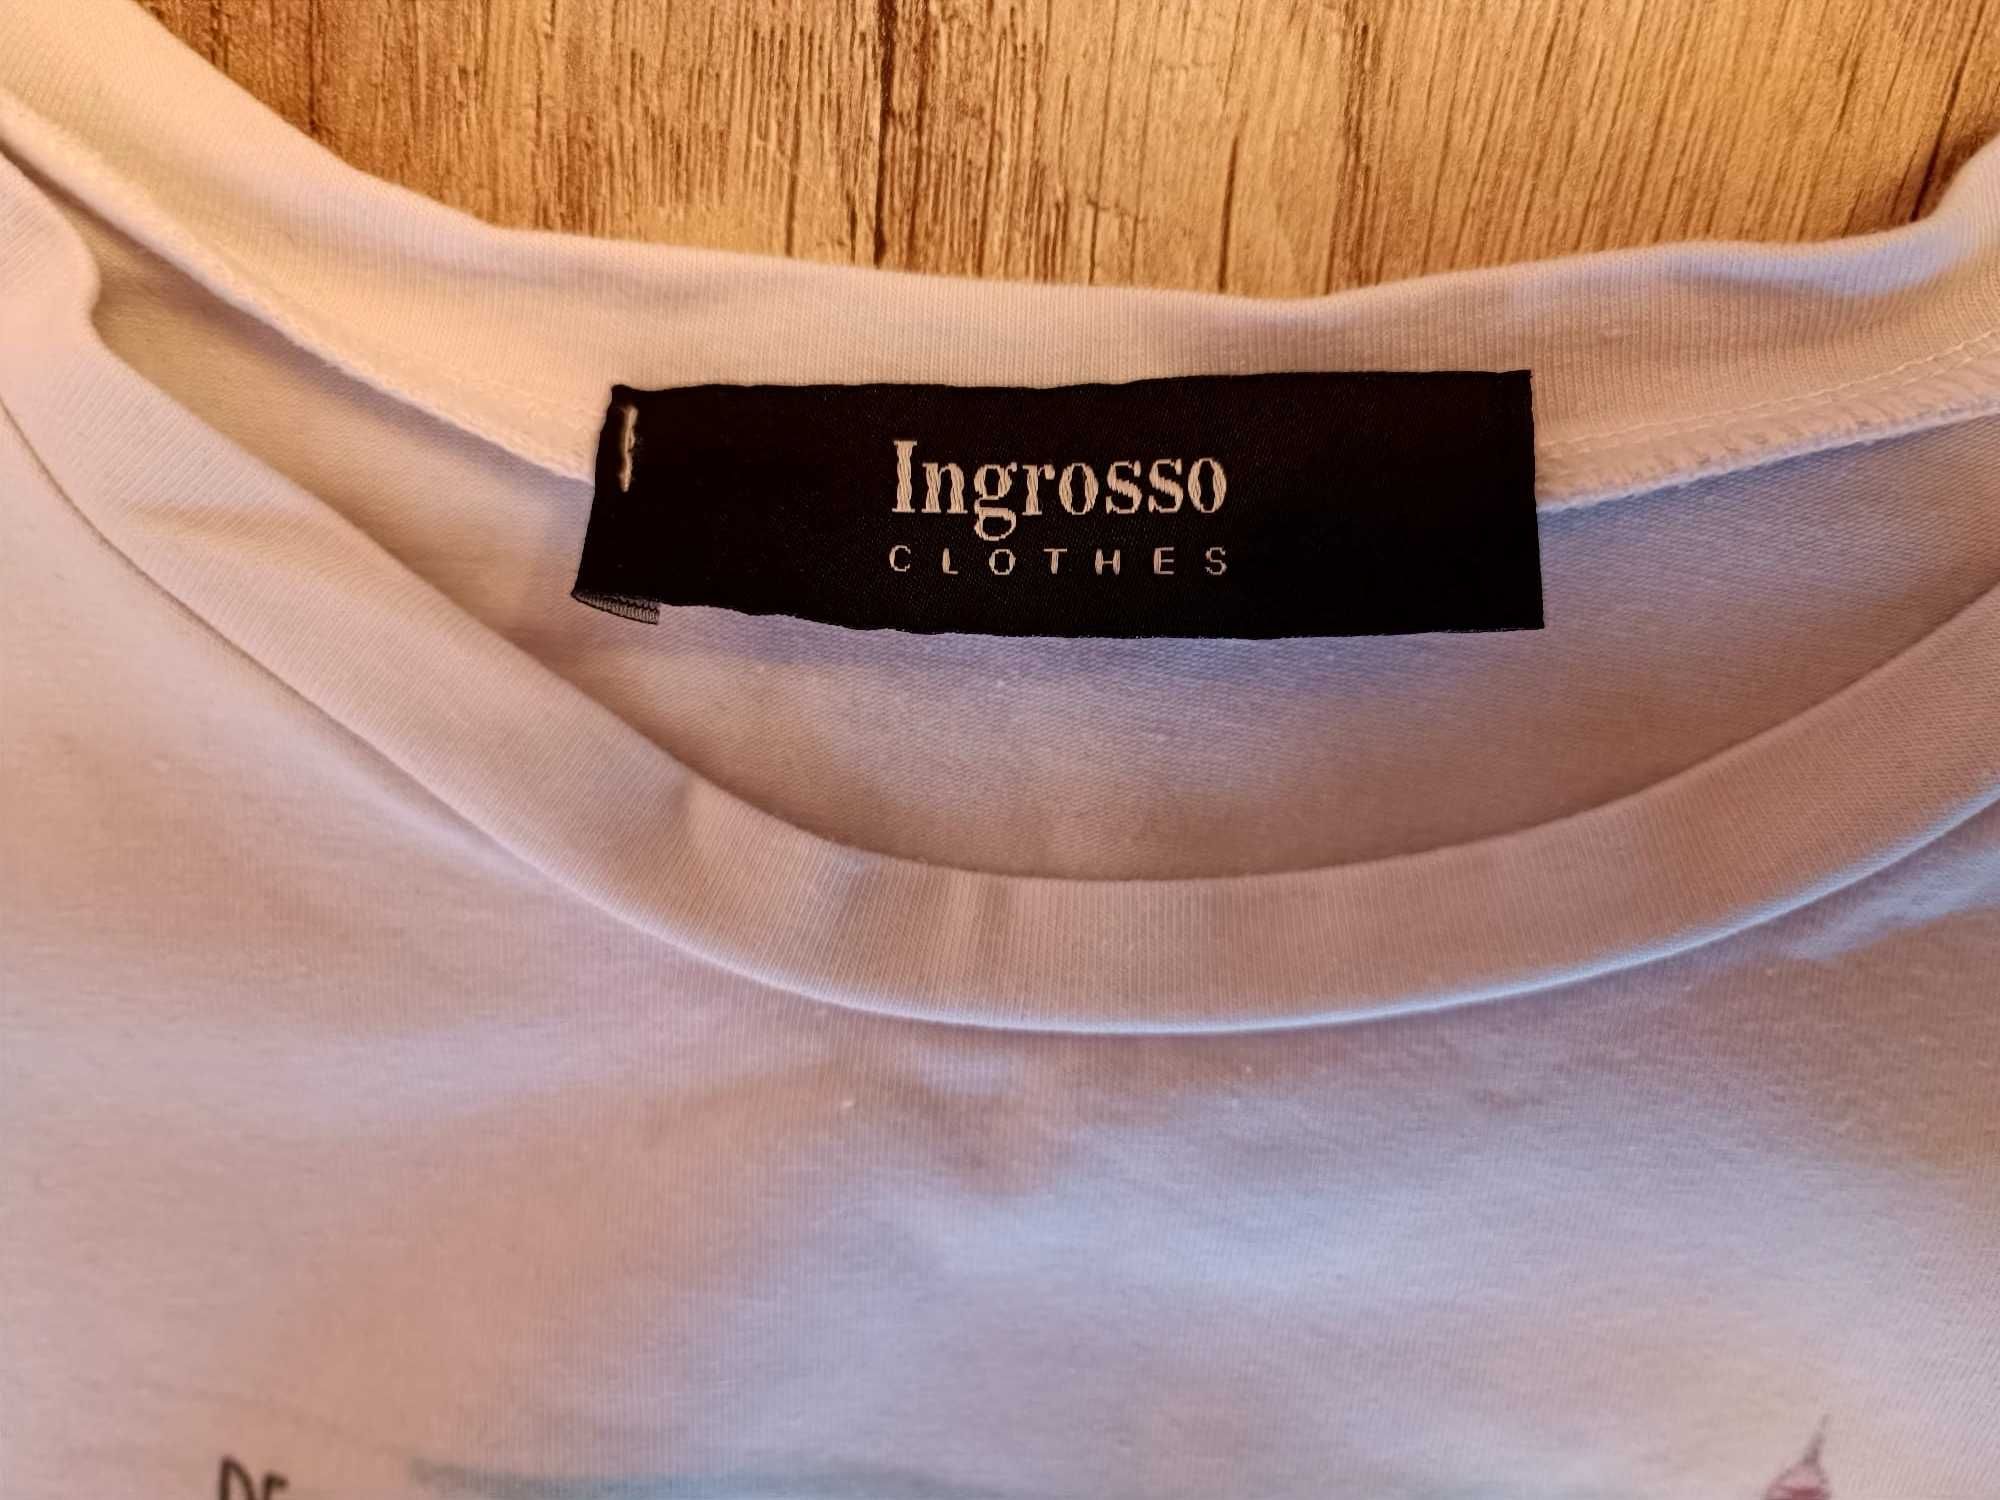 Ingrosso Modna bluzka biała z nadrukiem Paryż, S